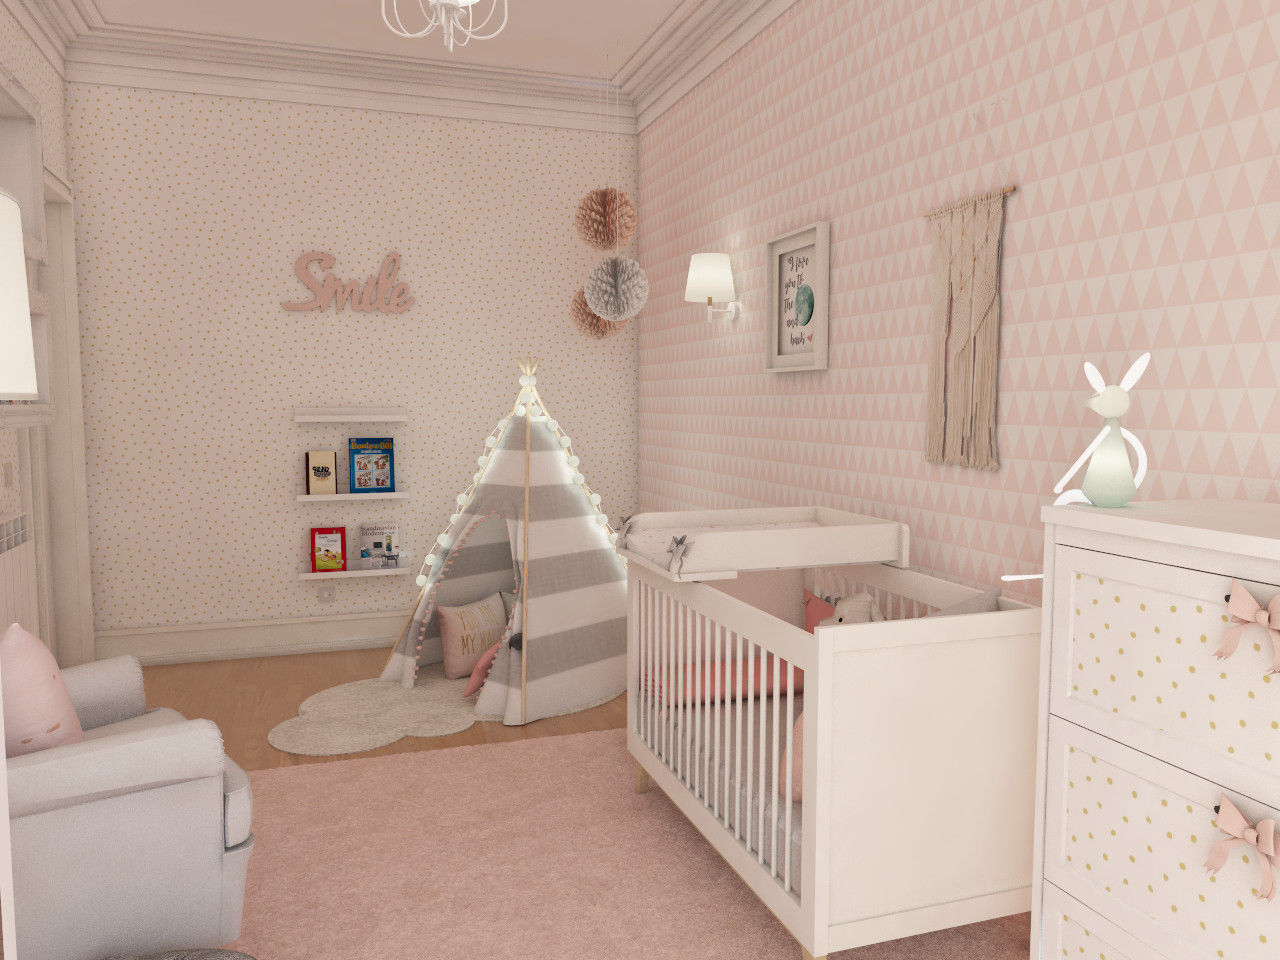 Projeto tranquilo de decoração de quarto de bebé , The Spacealist - Arquitectura e Interiores The Spacealist - Arquitectura e Interiores Bebek odası